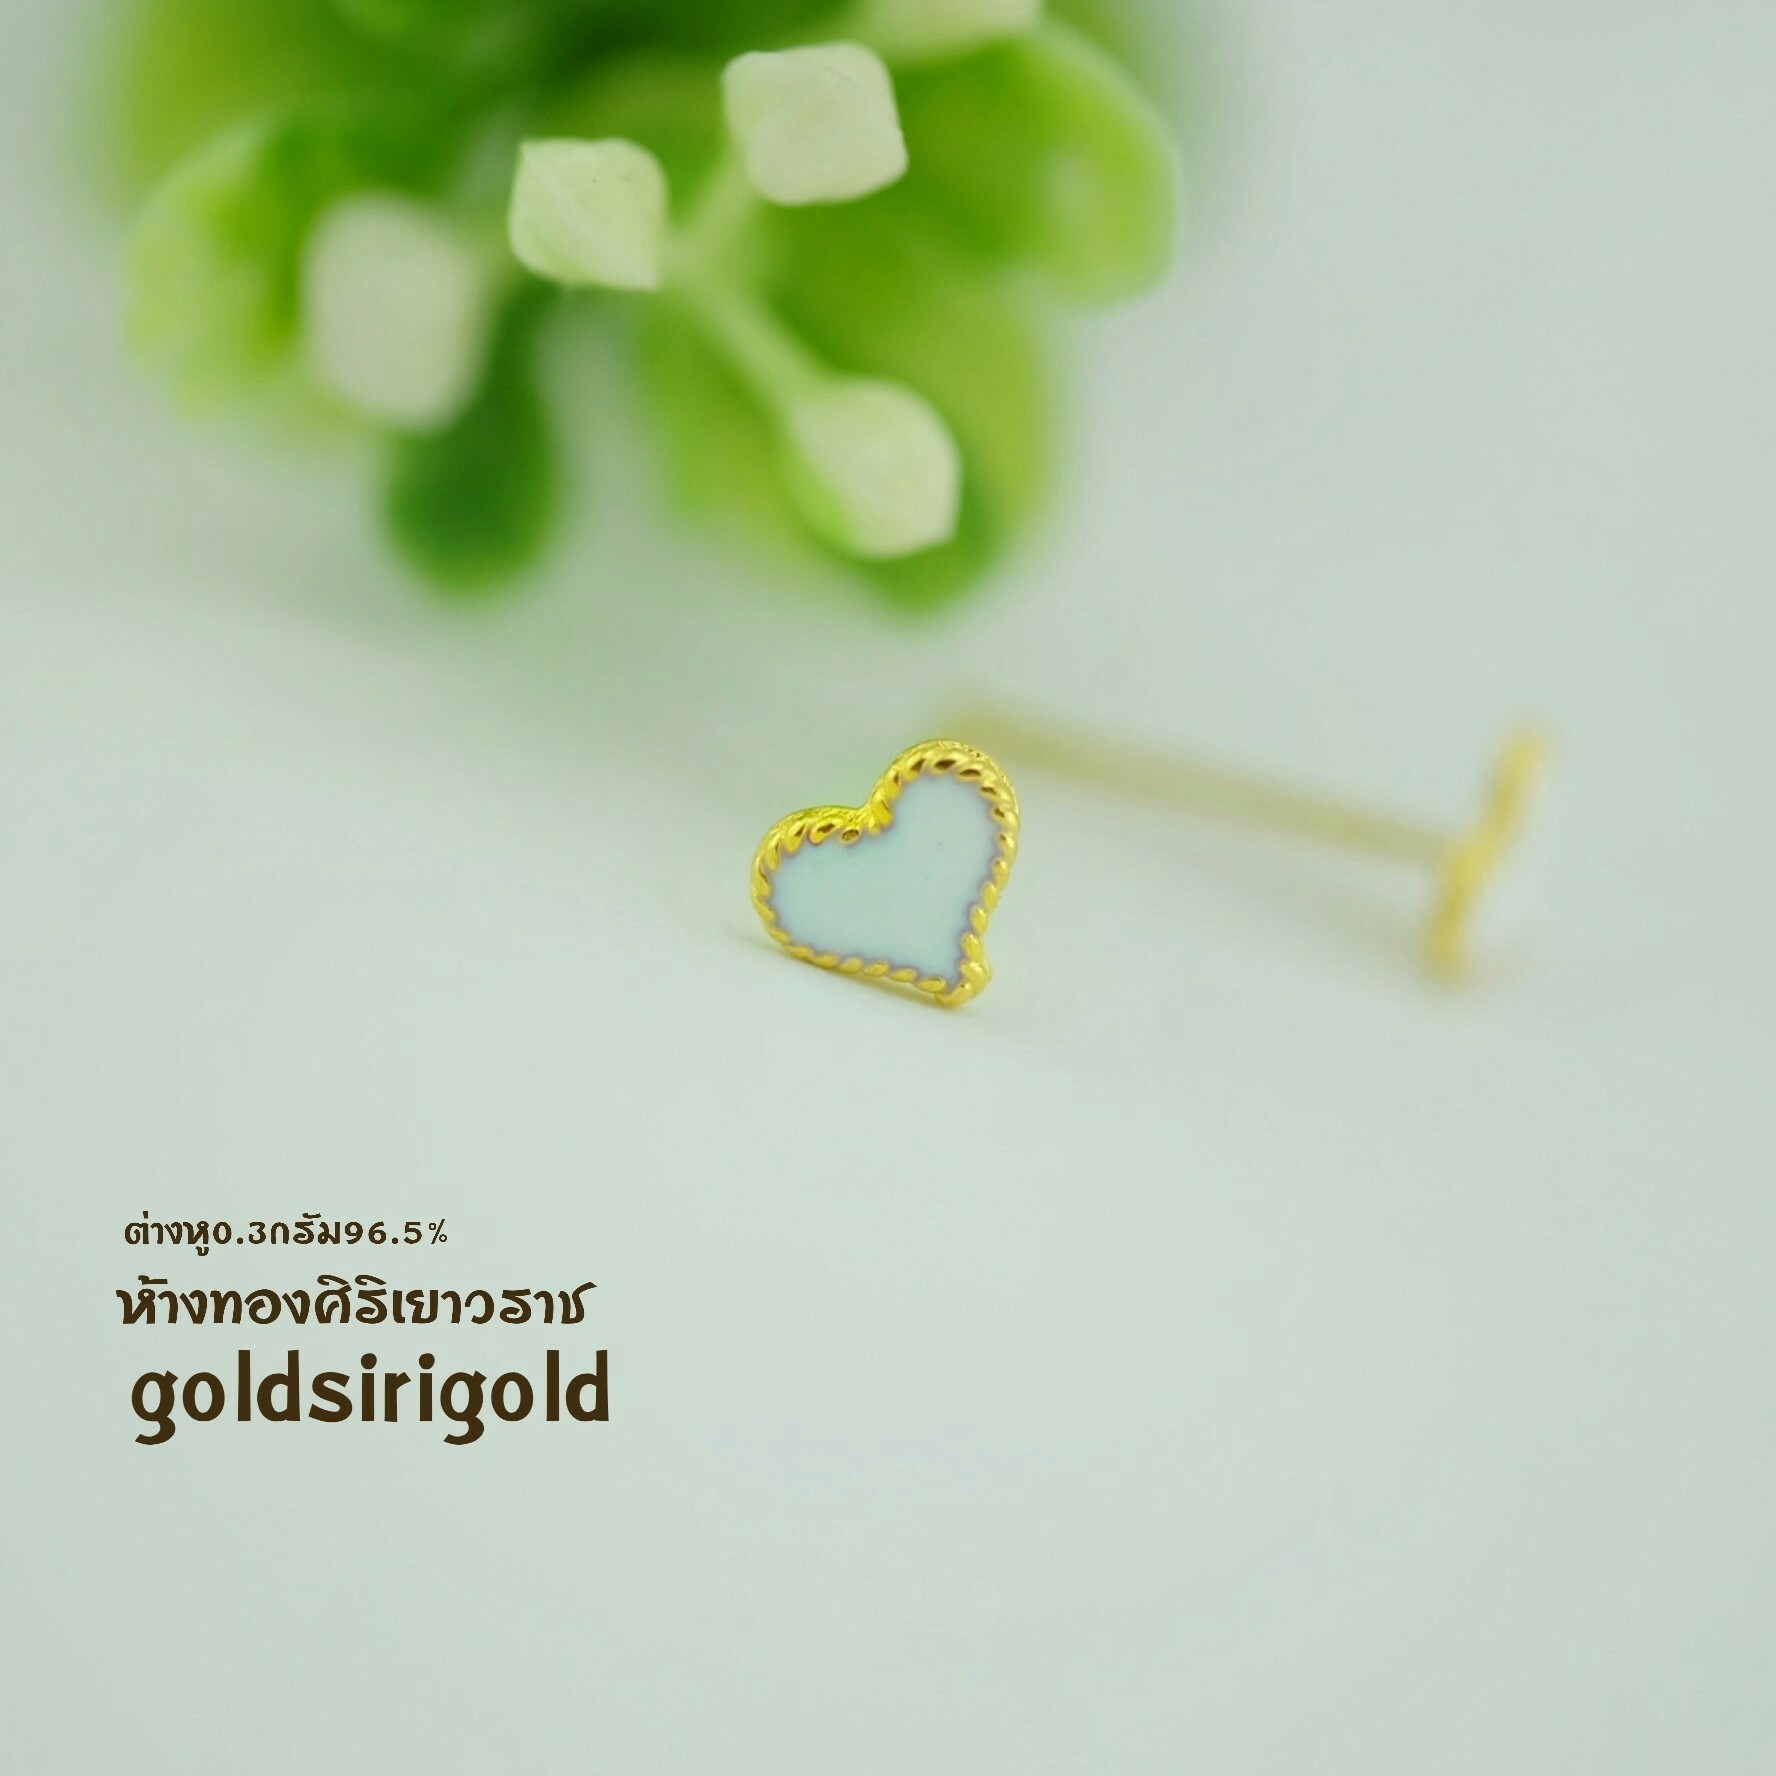 ต่างหูทองแท้ หัวใจลงยาสีขาว 0.3 กรัม #ทองคำแท้96.5% #ขายได้ จำนำได้ #มีใบรับประกัน #สินค้าพร้อมส่ง!!